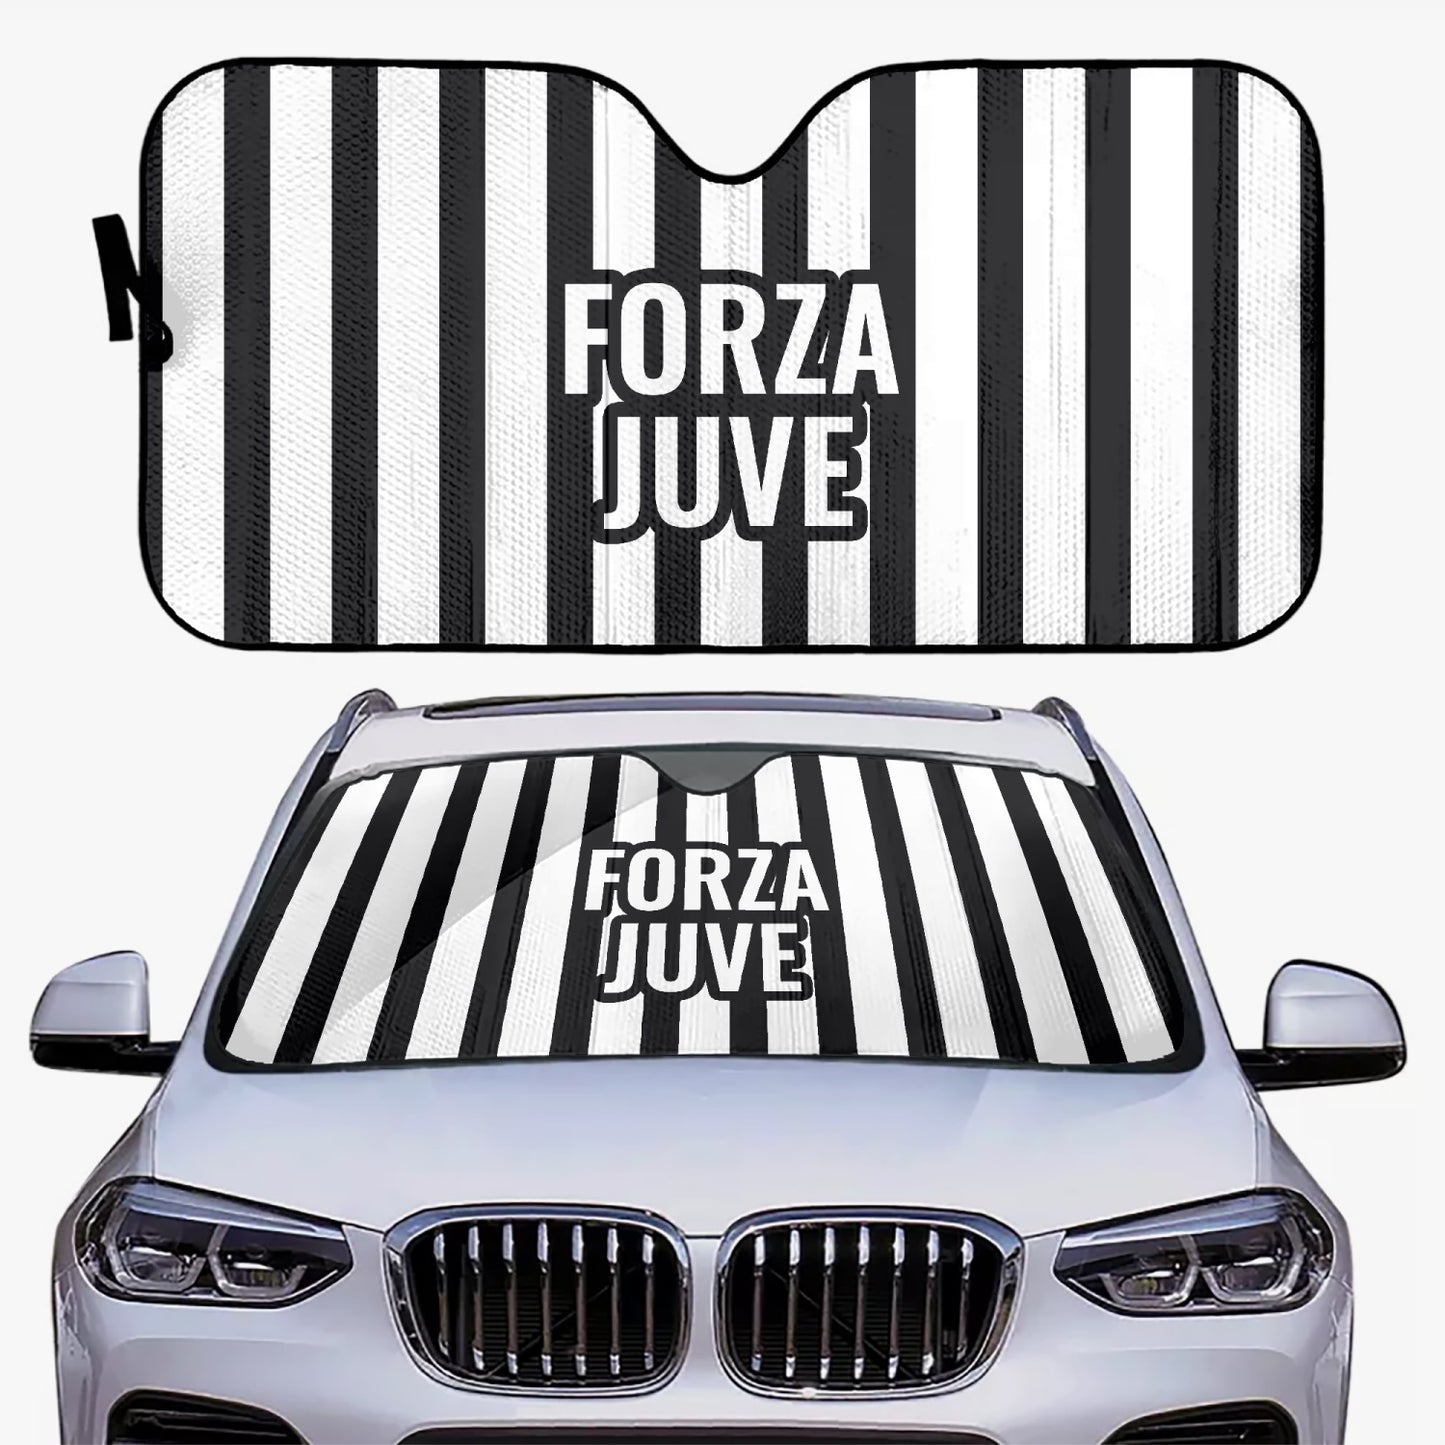 Forza Juve - Car Sun Shade